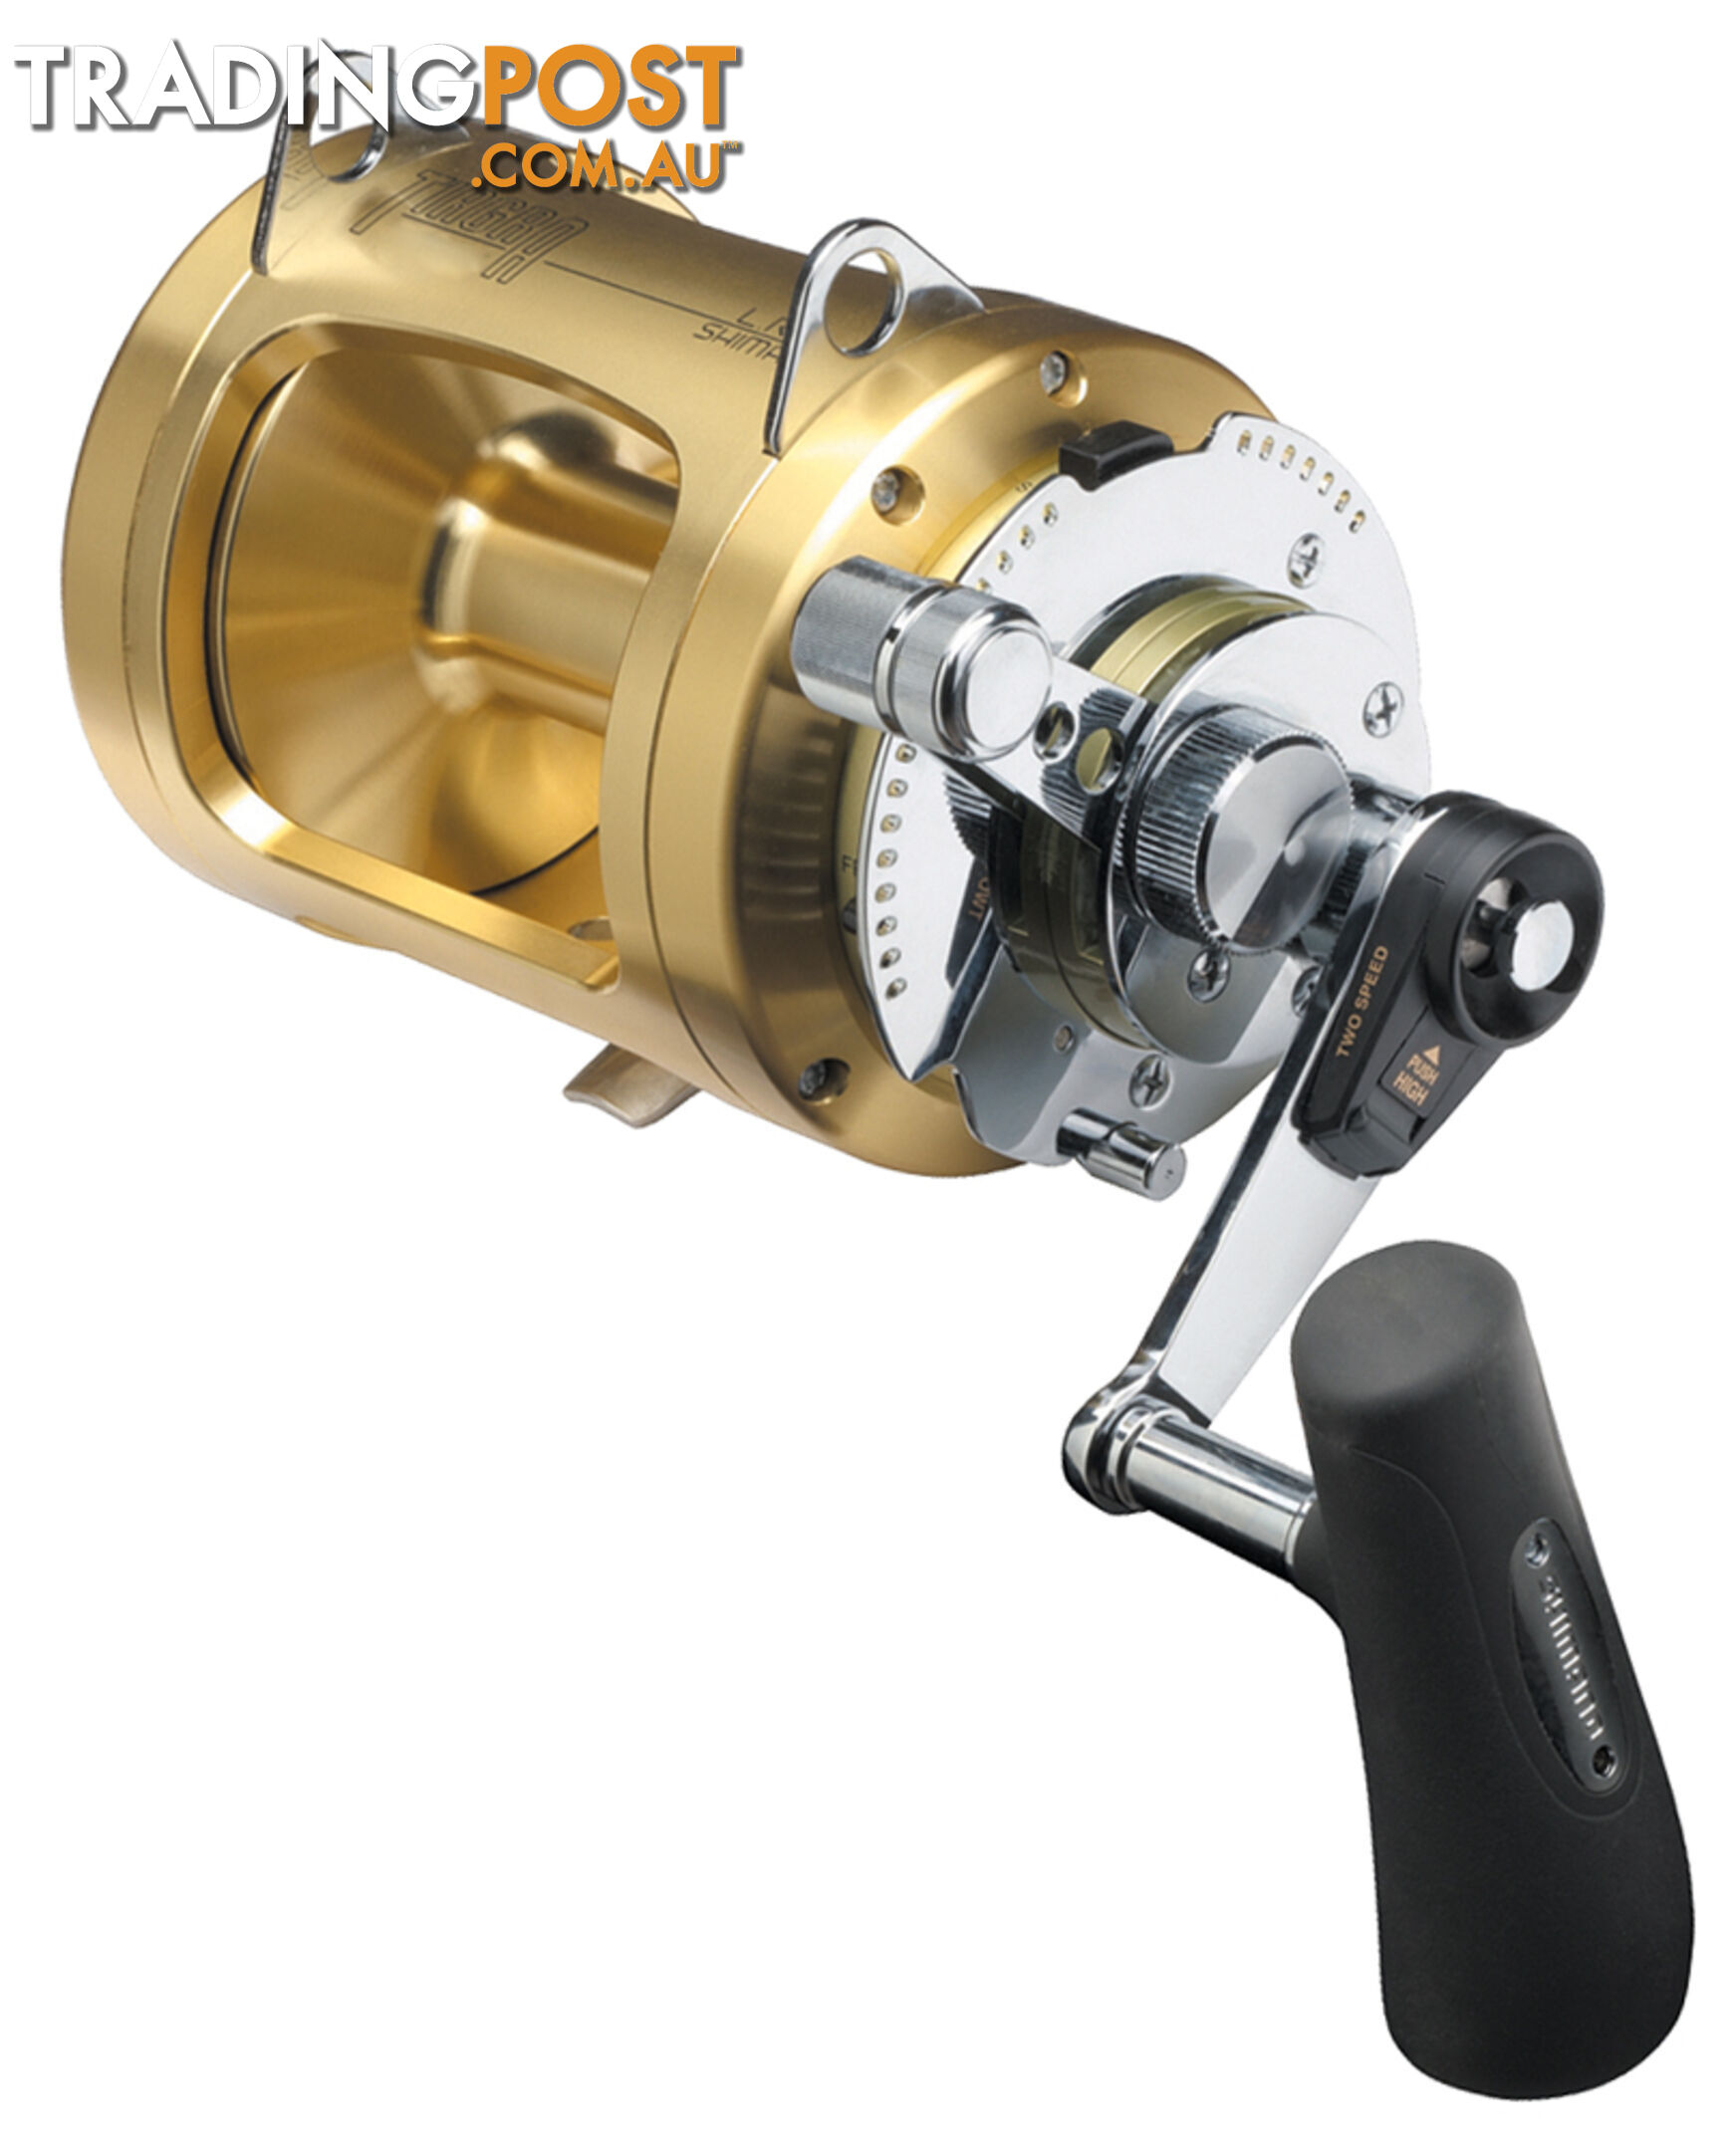 Shimano Tiagra Fishing Reel 30 WLRSA - 2 Speed Game Reel - TI30WLRSA - Shimano - 022255067959